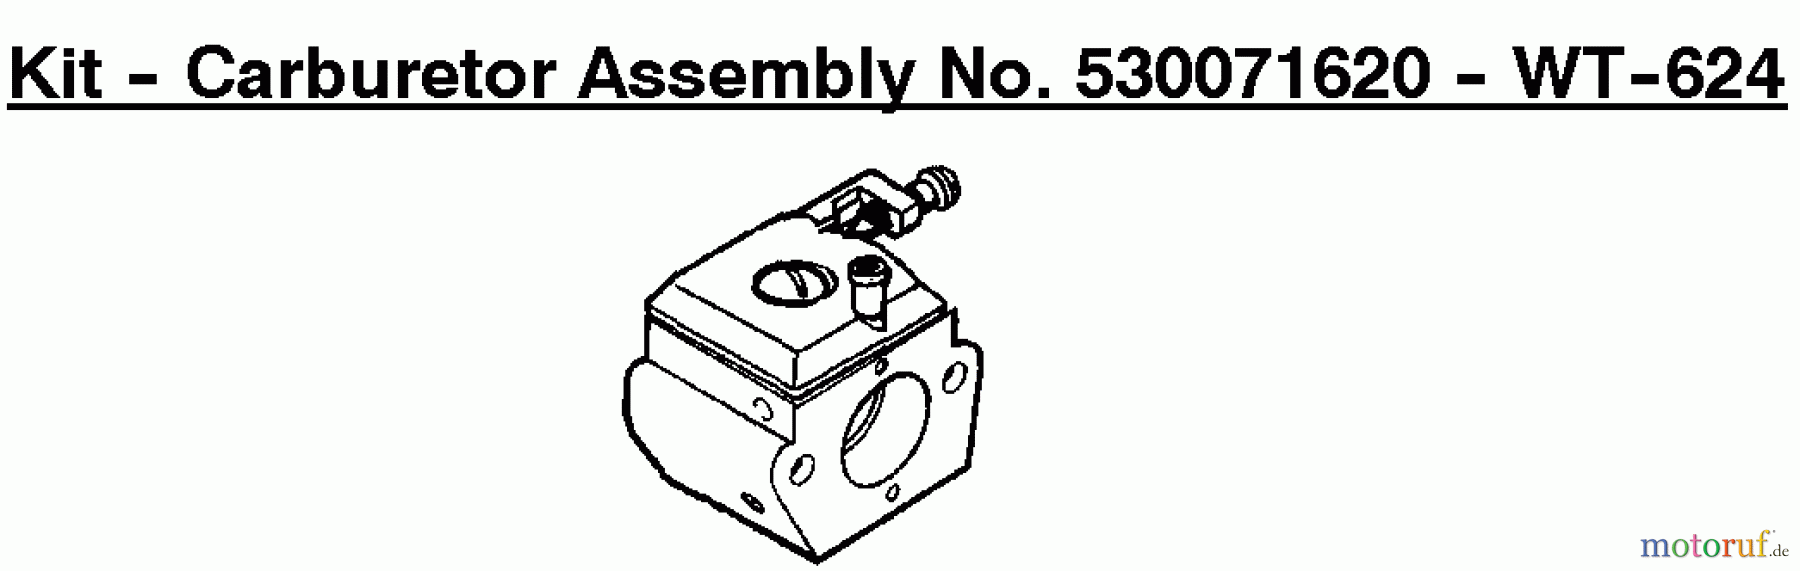  Poulan / Weed Eater Motorsägen 2150 PR - Poulan Chainsaw Kit - Carburetor Assembly